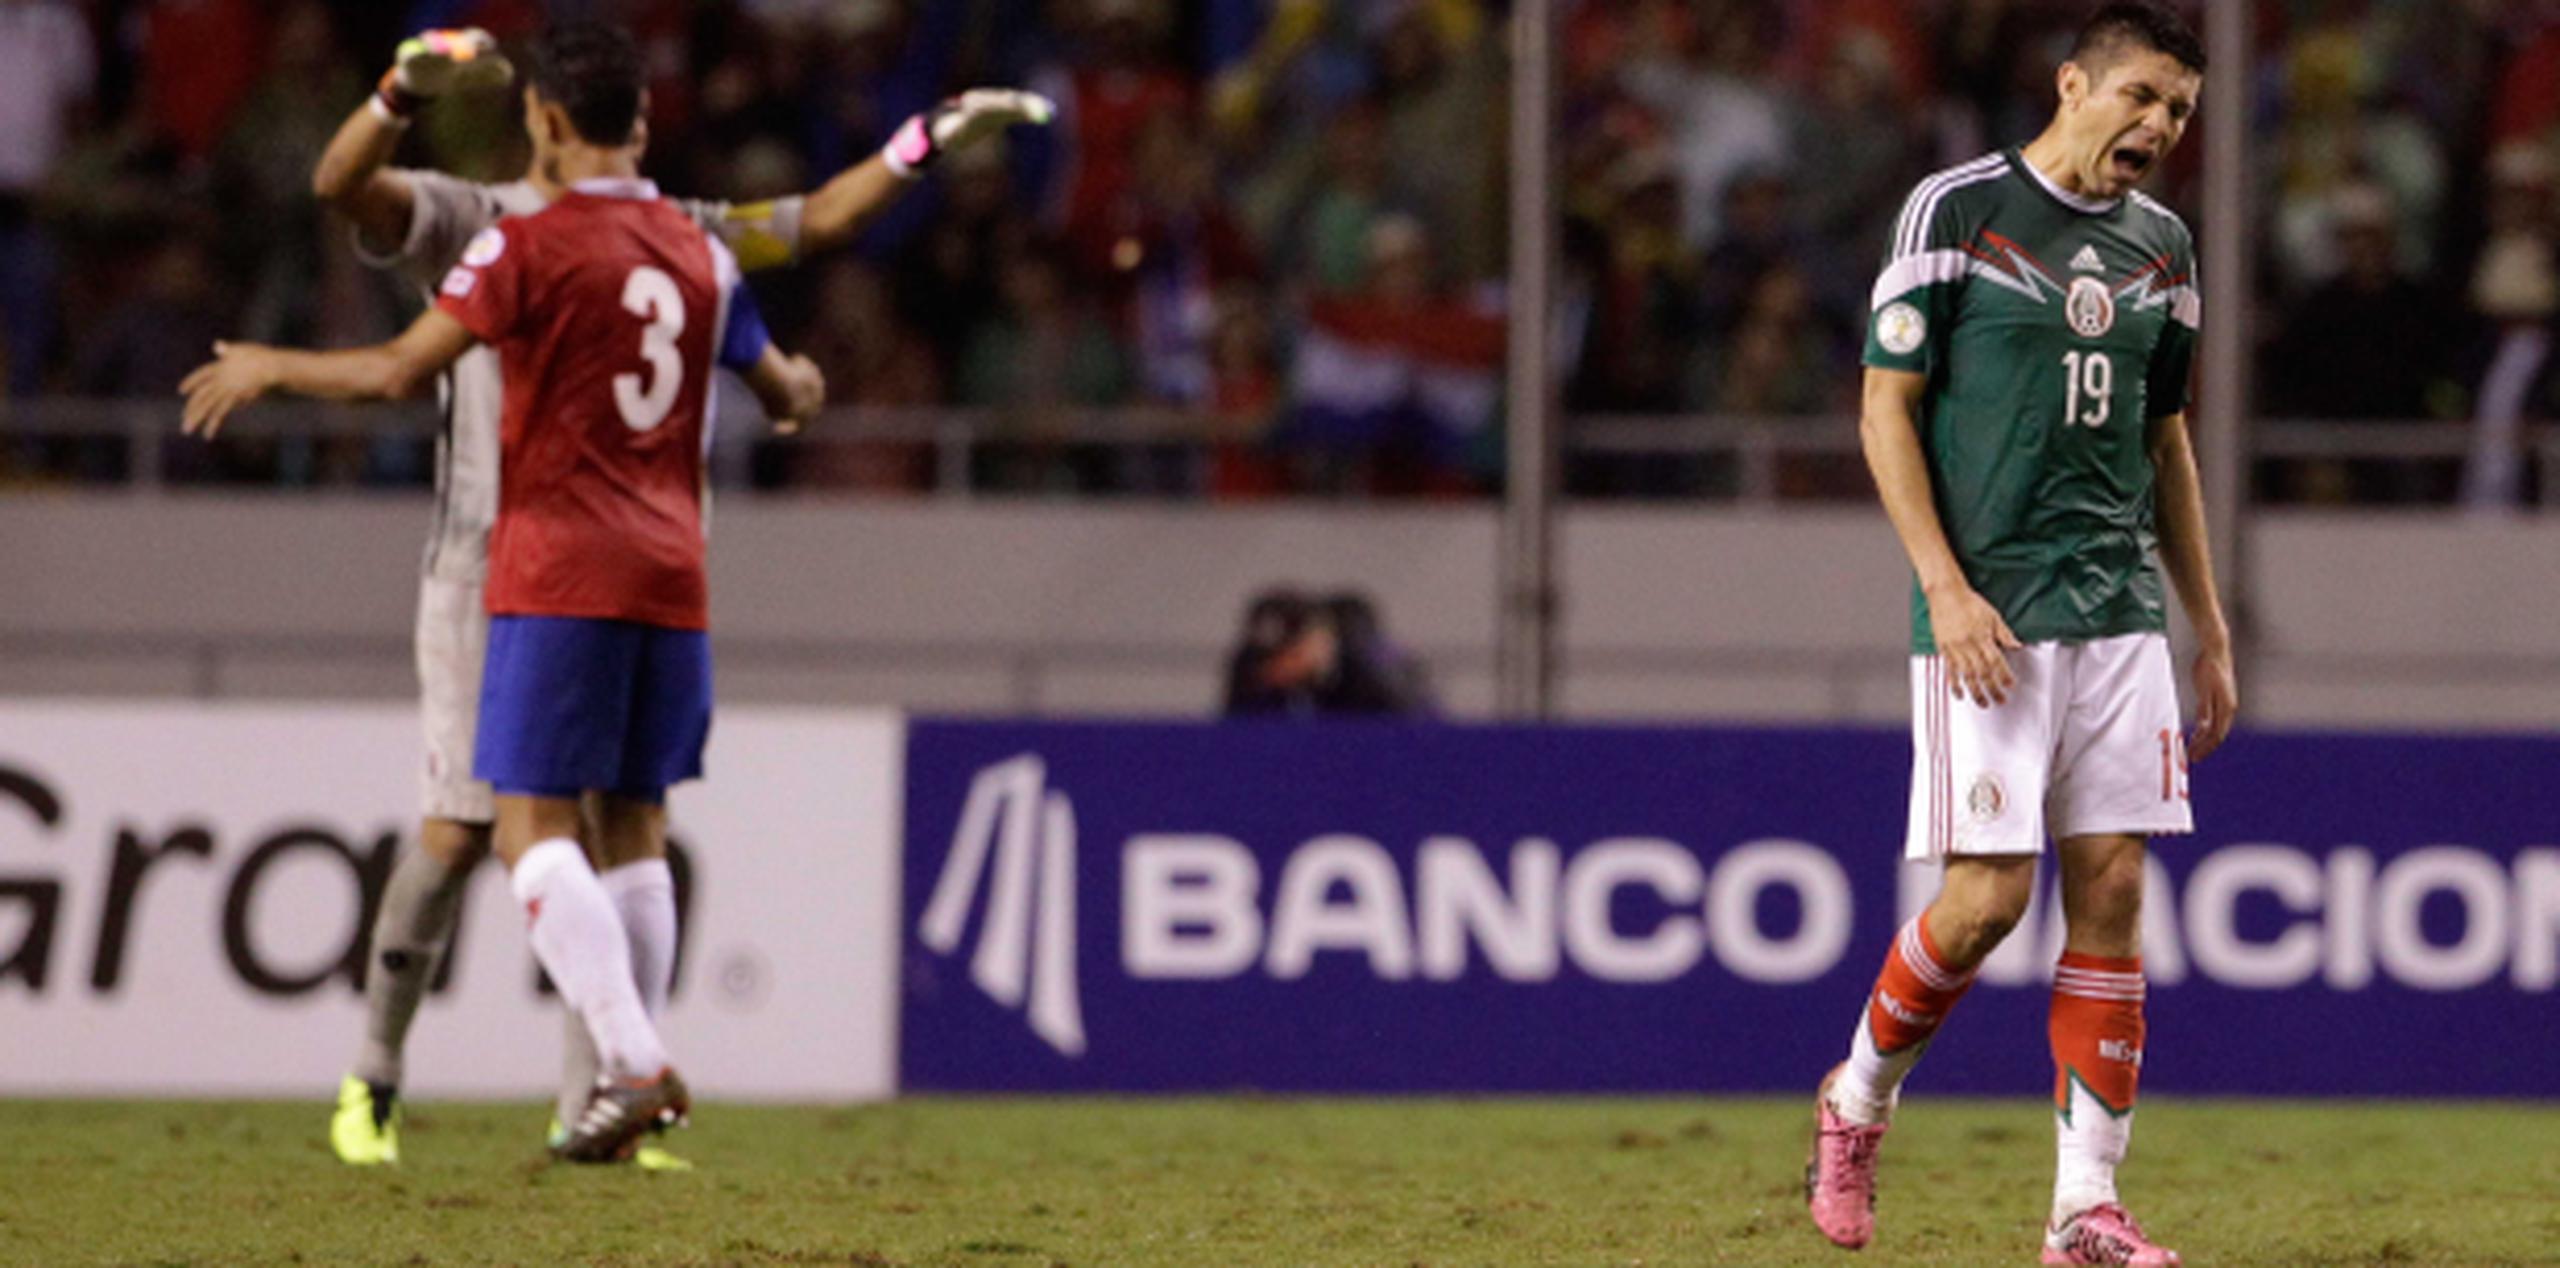 "Las cosas no nos están saliendo como quisiéramos", expresó el delantero Oribe Peralta (derecha) luego del partido. (AP / Moises Castillo)